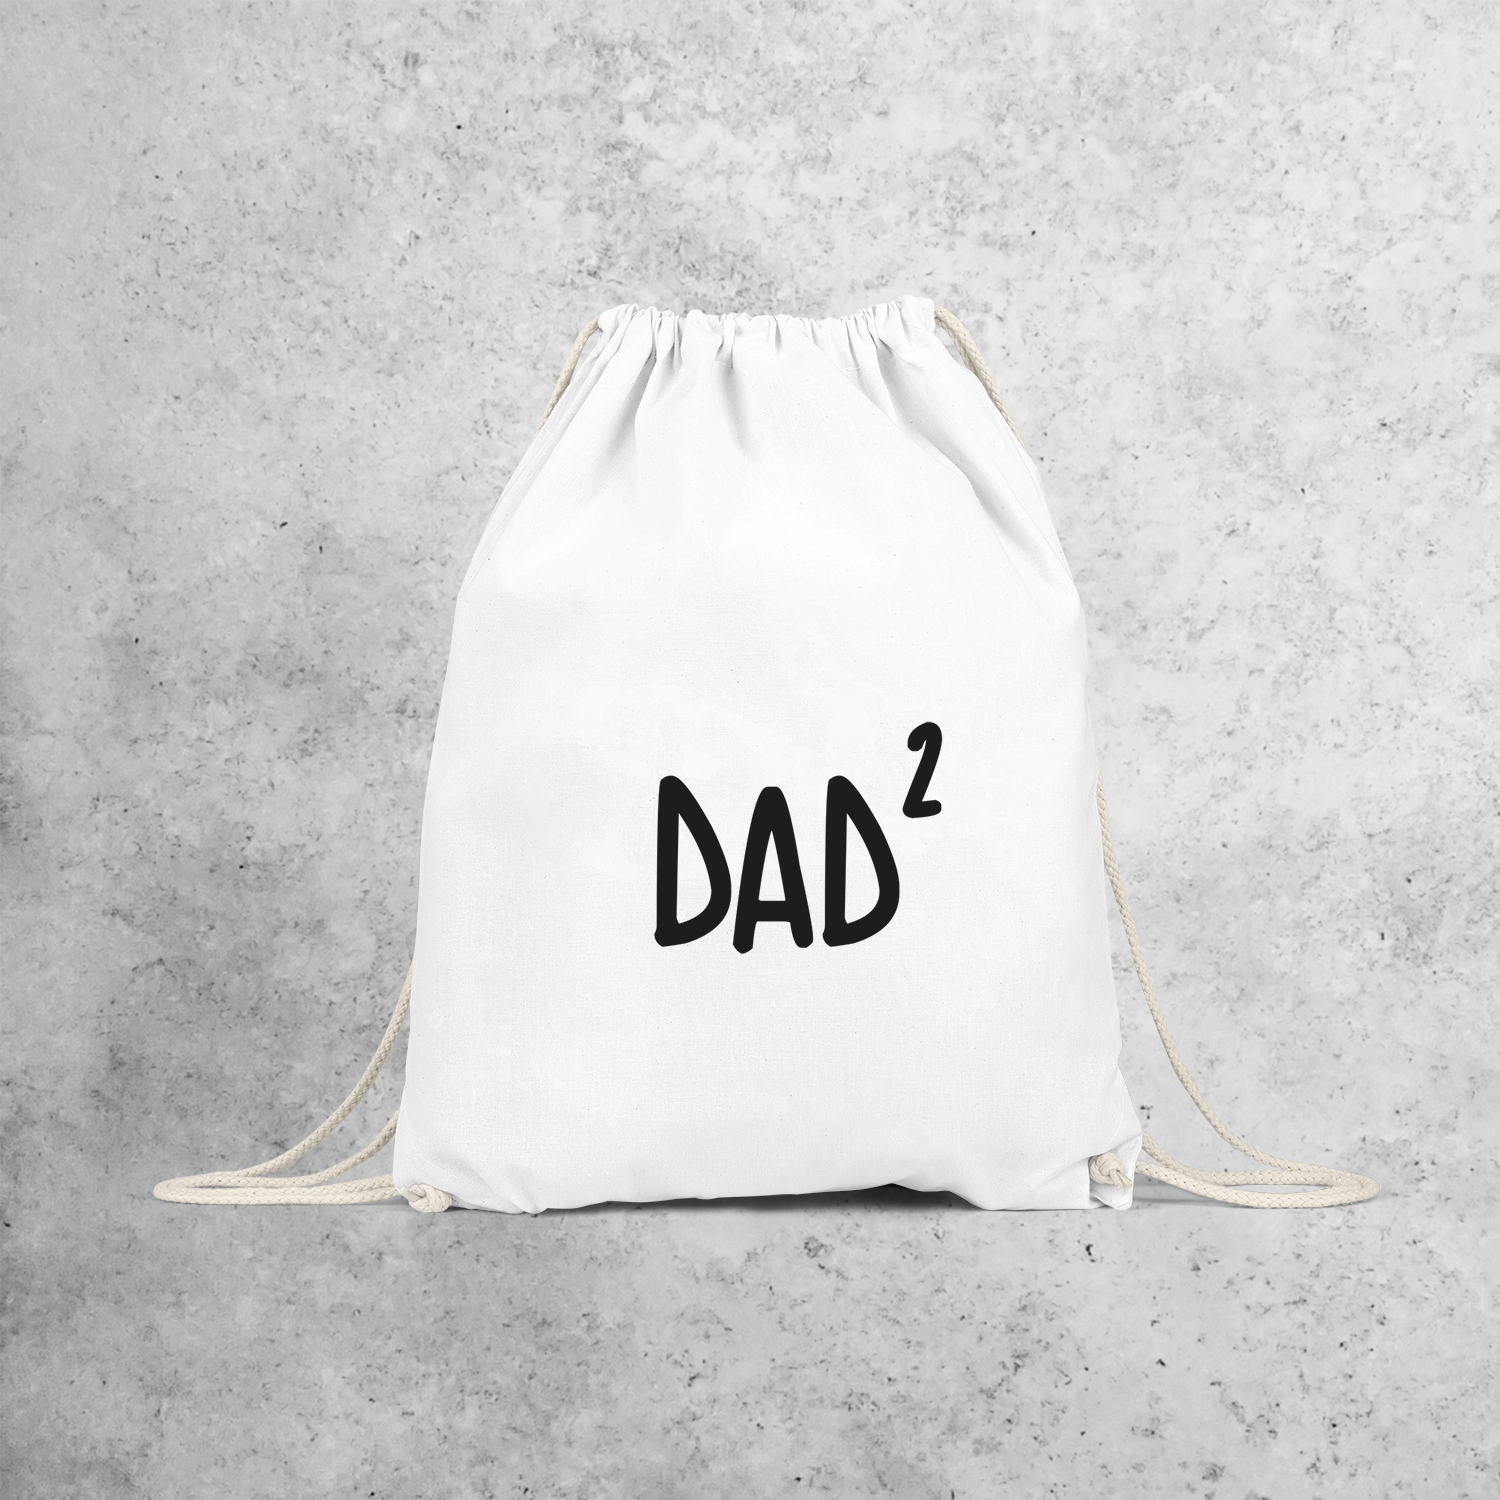 'Dad' backpack